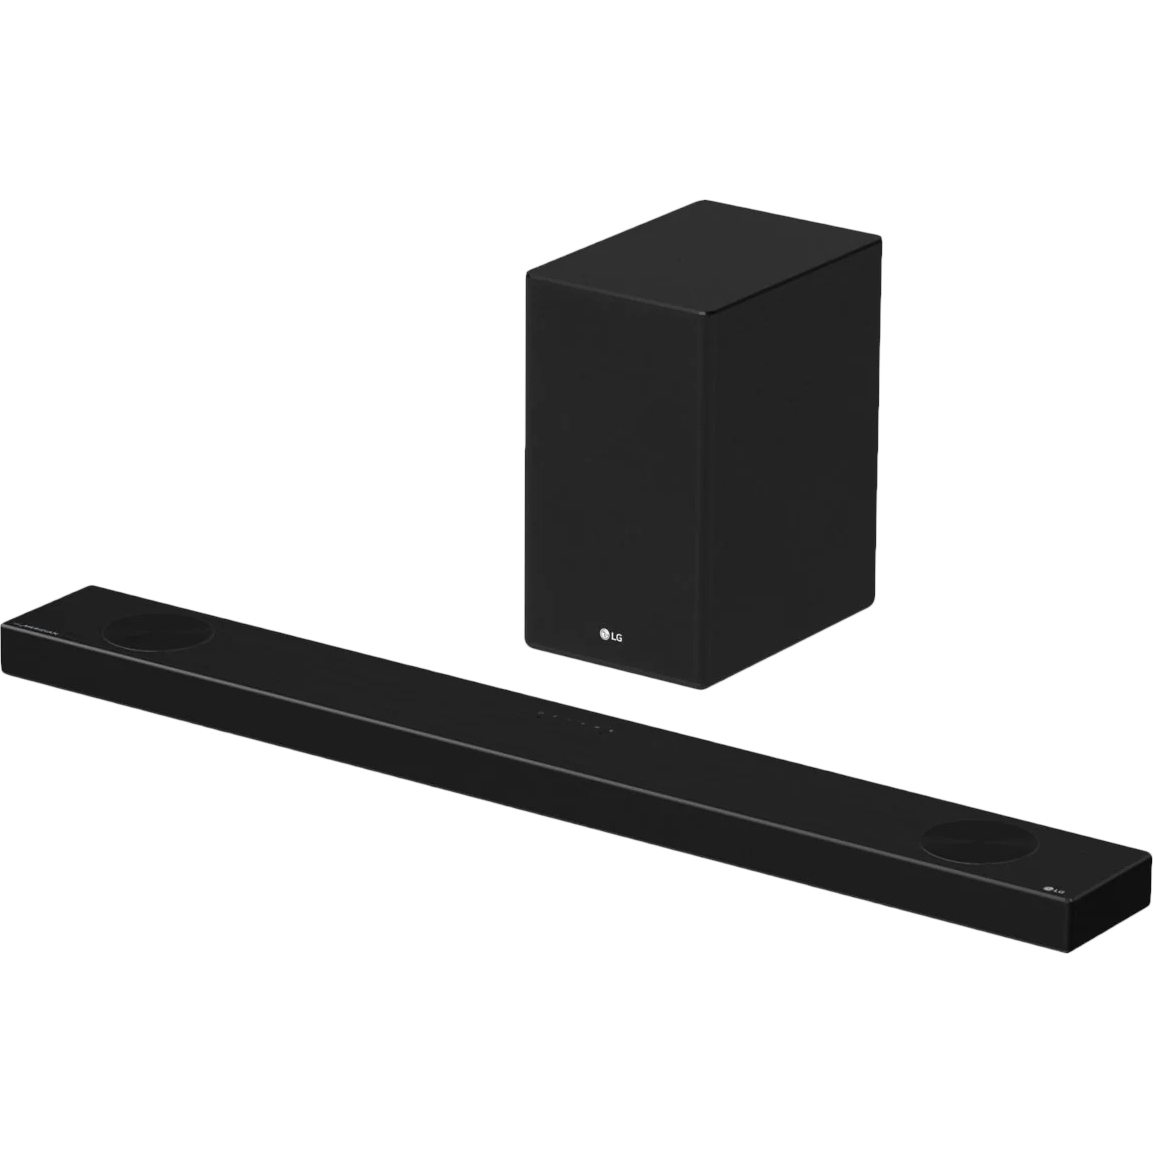 Саундбар LG SP9A, цвет черный, размер 39x22,1x31,28 см - фото 2